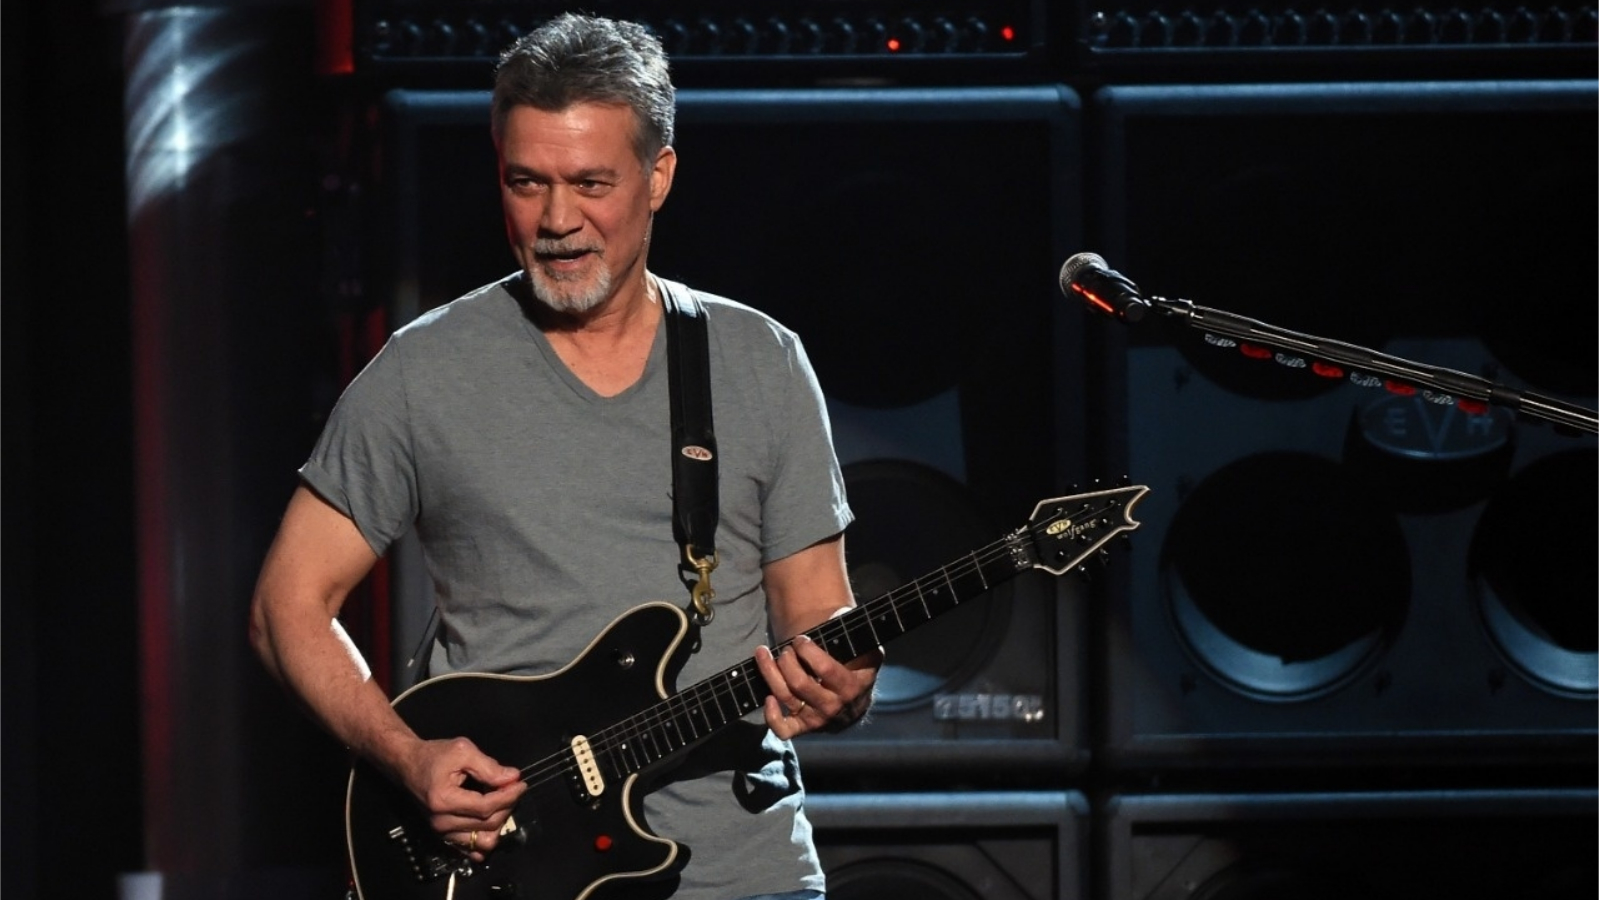 Morreu Eddie Van Halen vítima de cancro